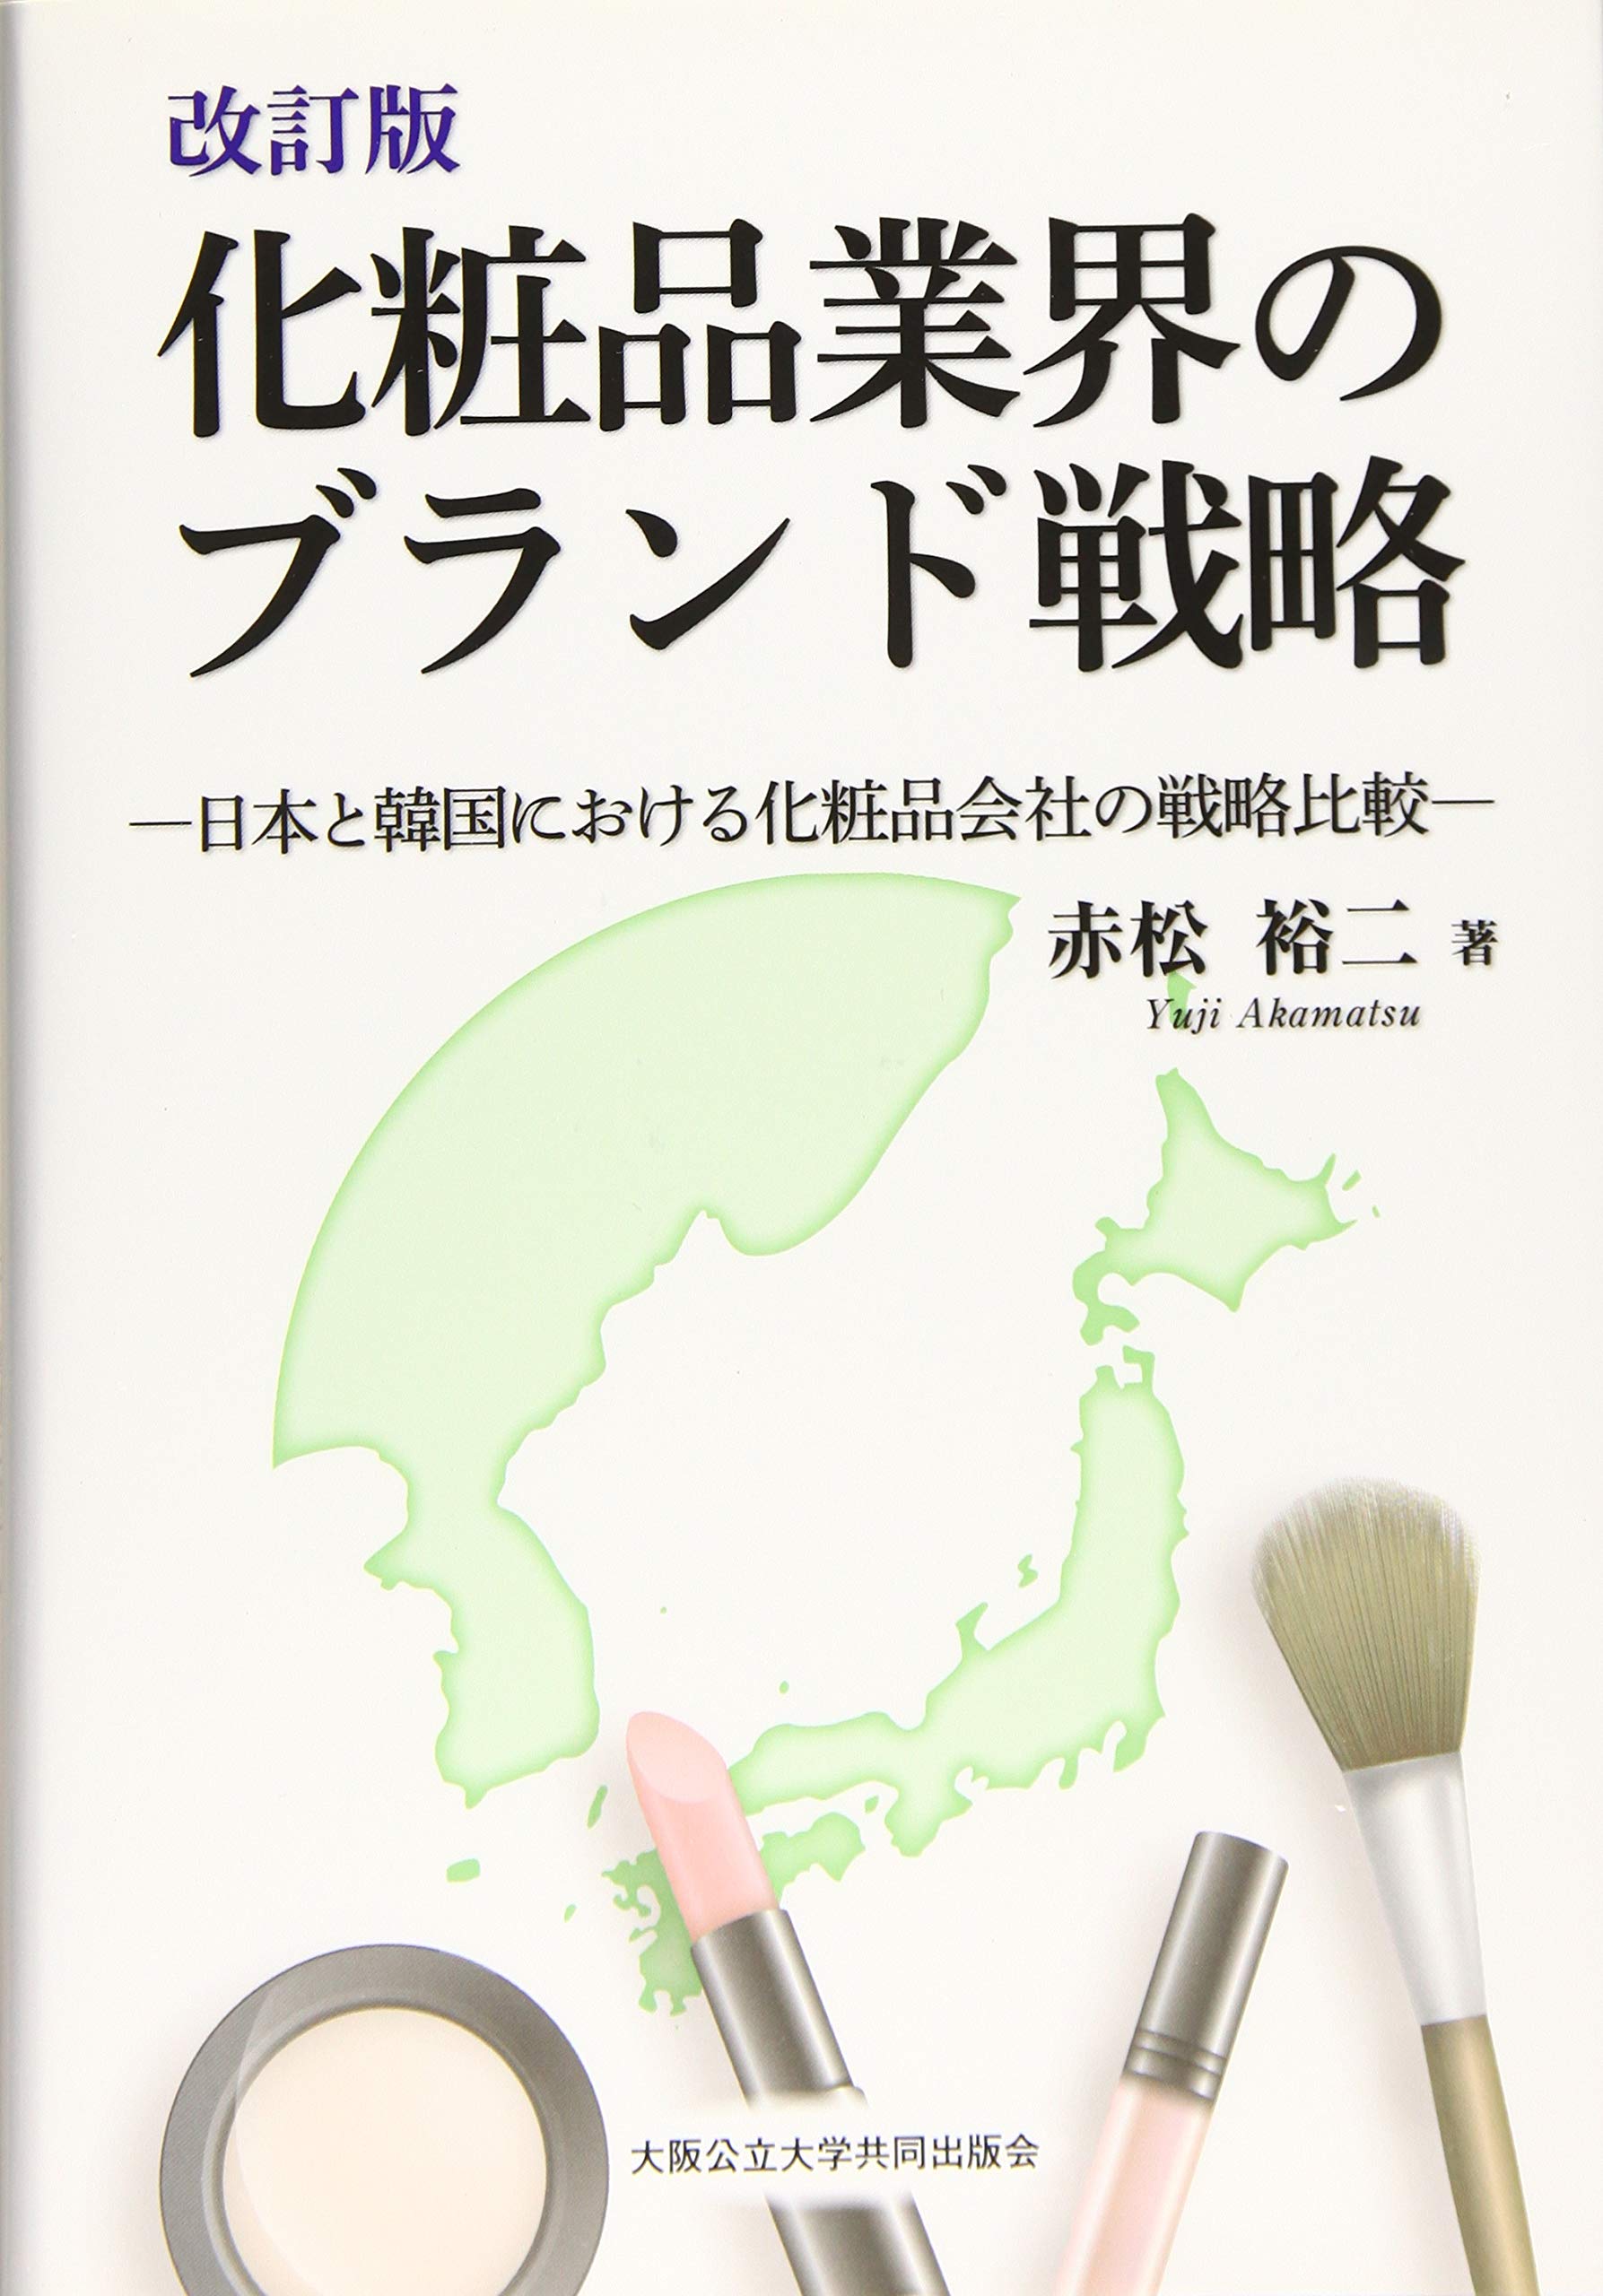 改訂版 化粧品業界のブランド戦略 -日本と韓国における化粧品会社の戦略比較